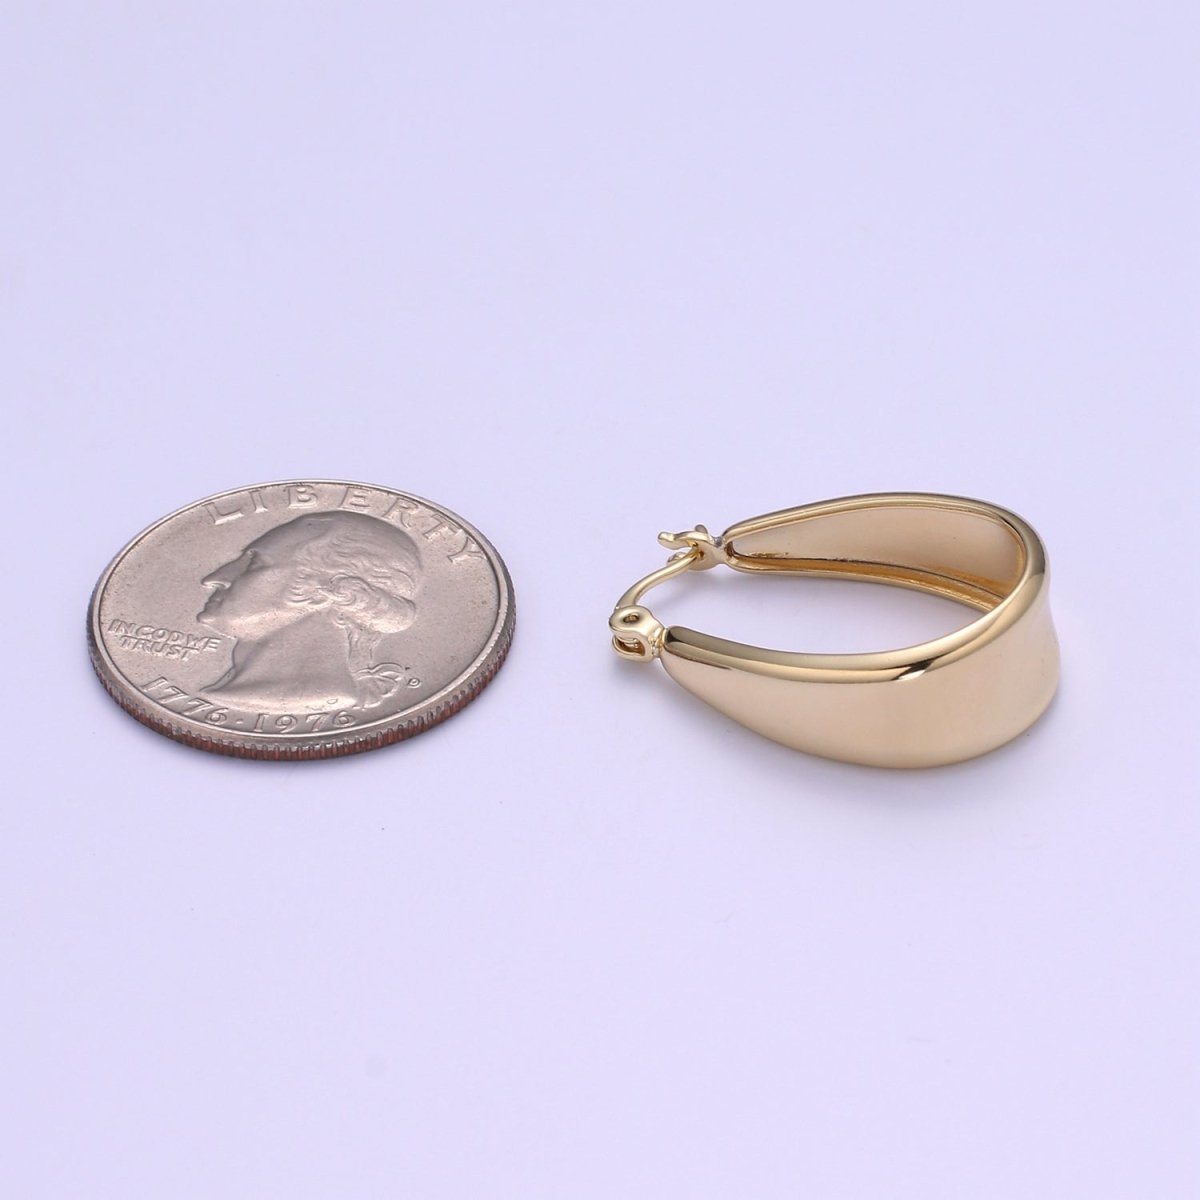 OS Gold chunky hoop earring 14k Gold Filled Earring hypoallergenic / gold hoop earrings / Bold hoops / thick hoop earrings for gift P-091 - DLUXCA